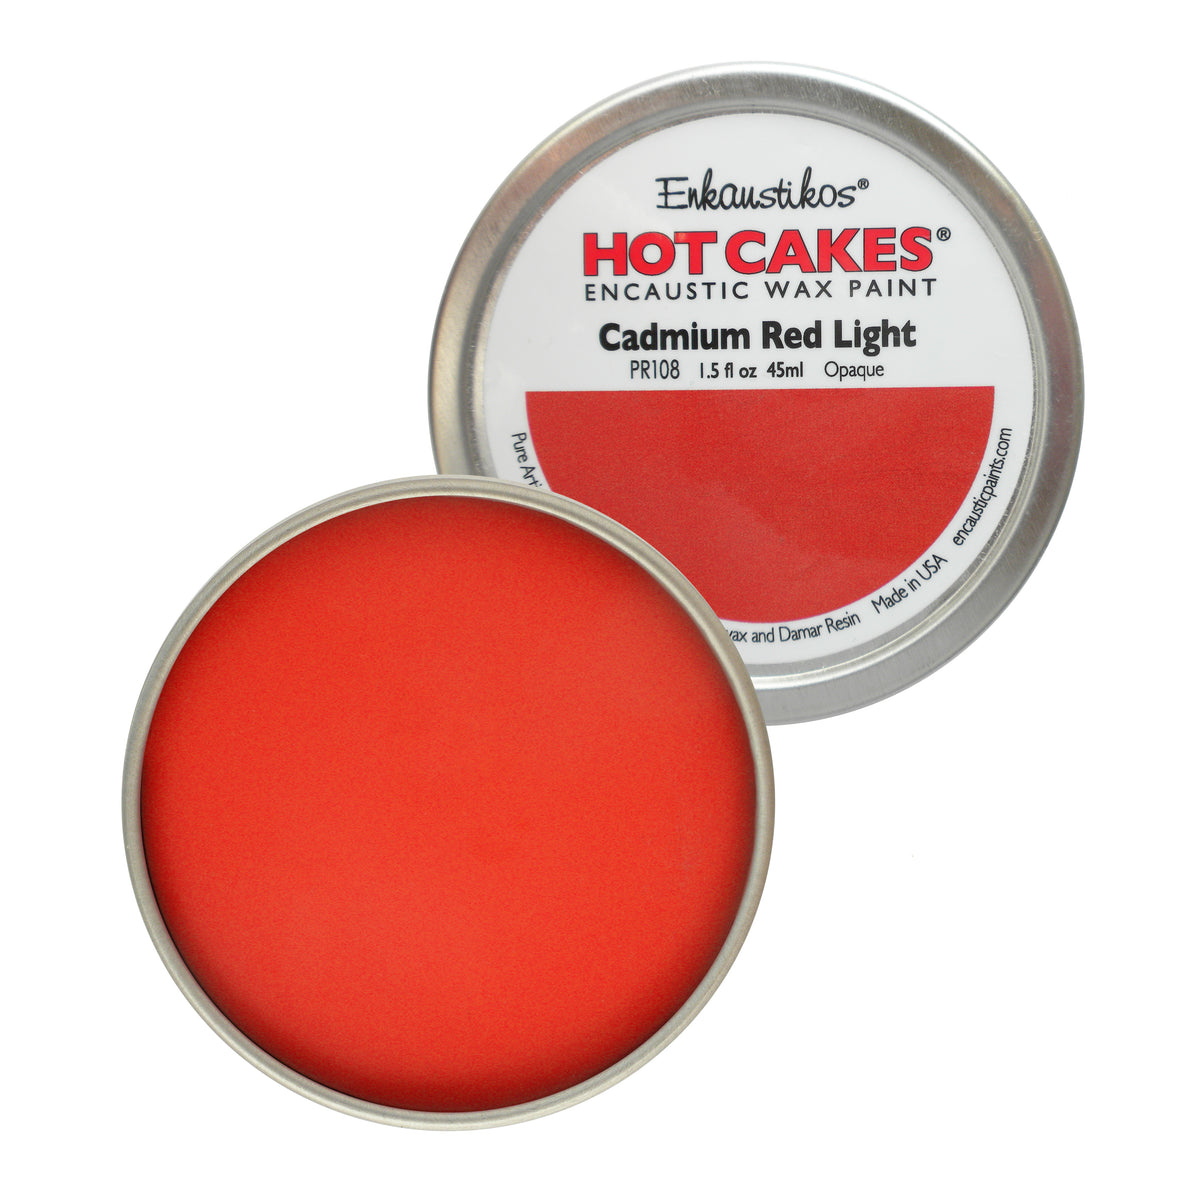 Cadmium Red Light Hot Cakes